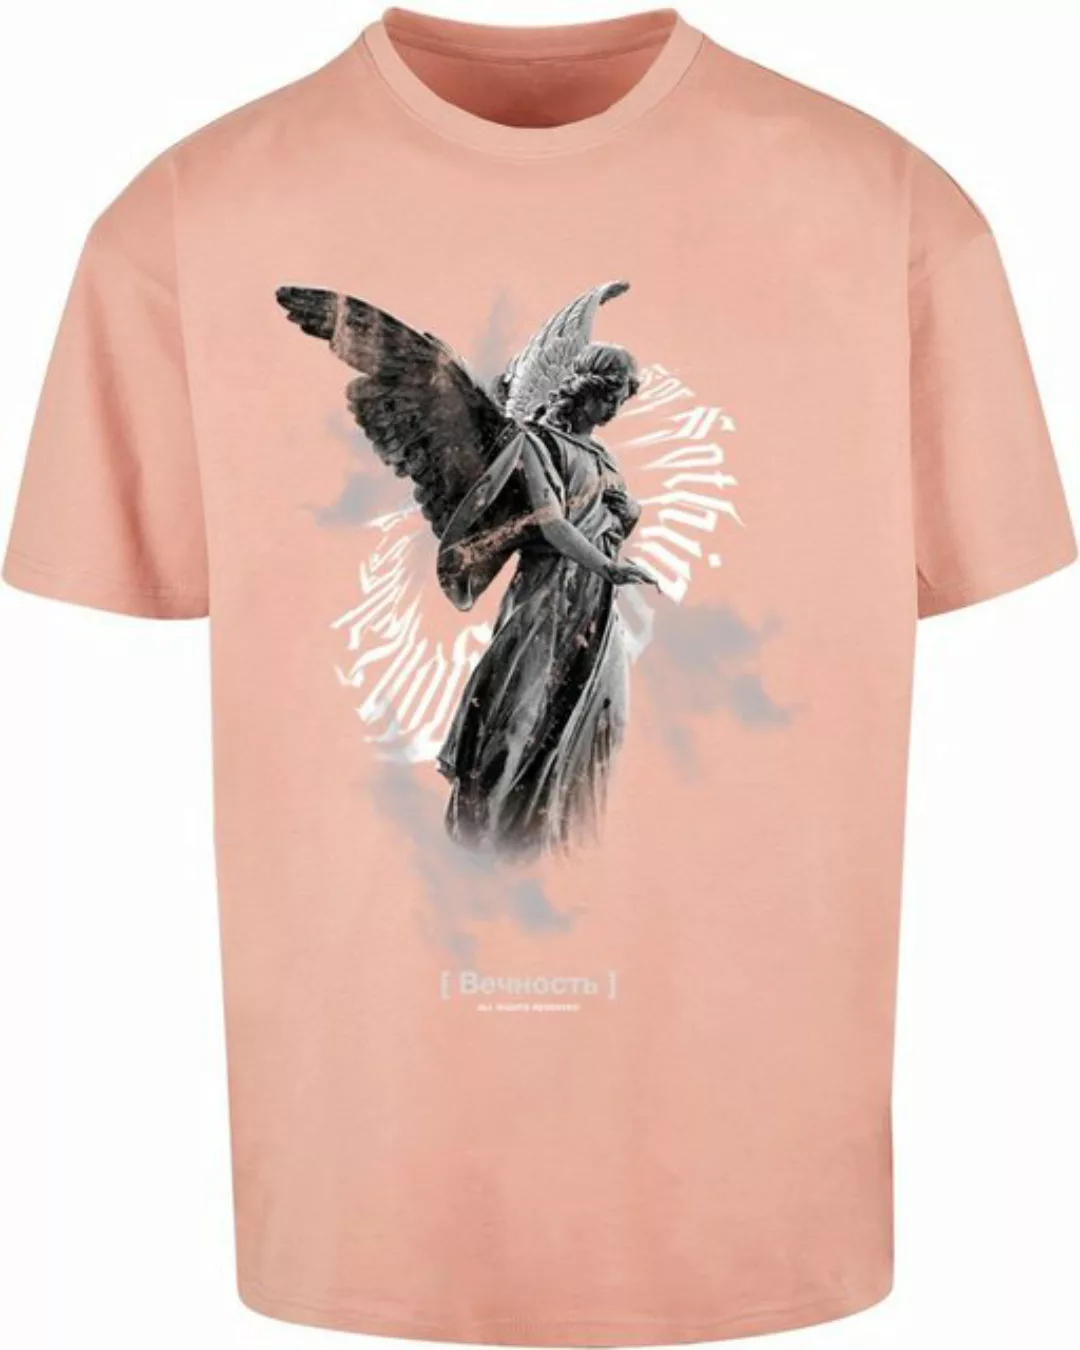 MJ Gonzales T-Shirt günstig online kaufen